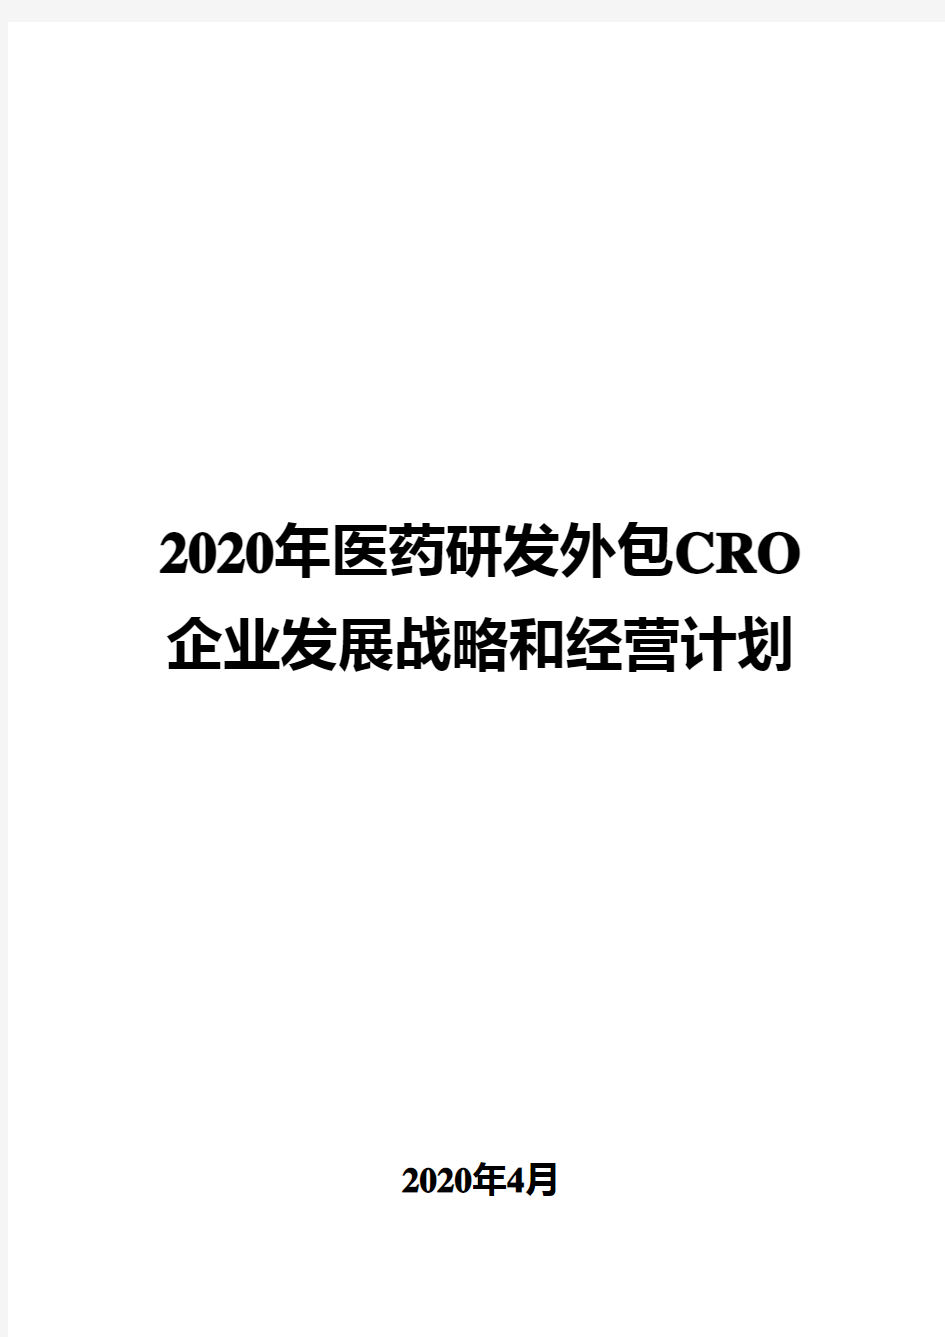 2020年医药研发外包CRO企业发展战略和经营计划